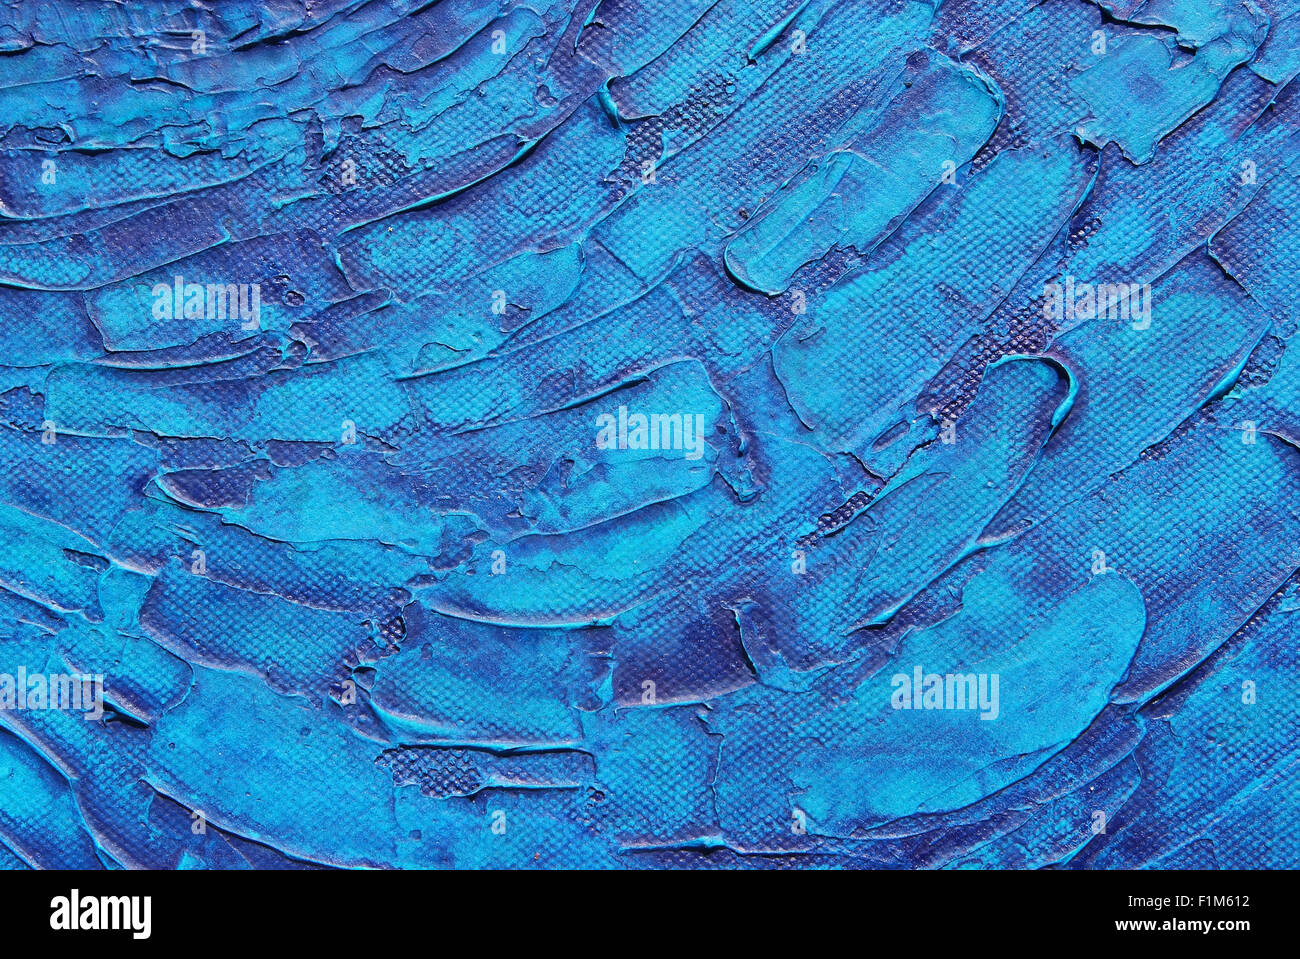 La texture de fond bleu, de la peinture acrylique sur toile Banque D'Images